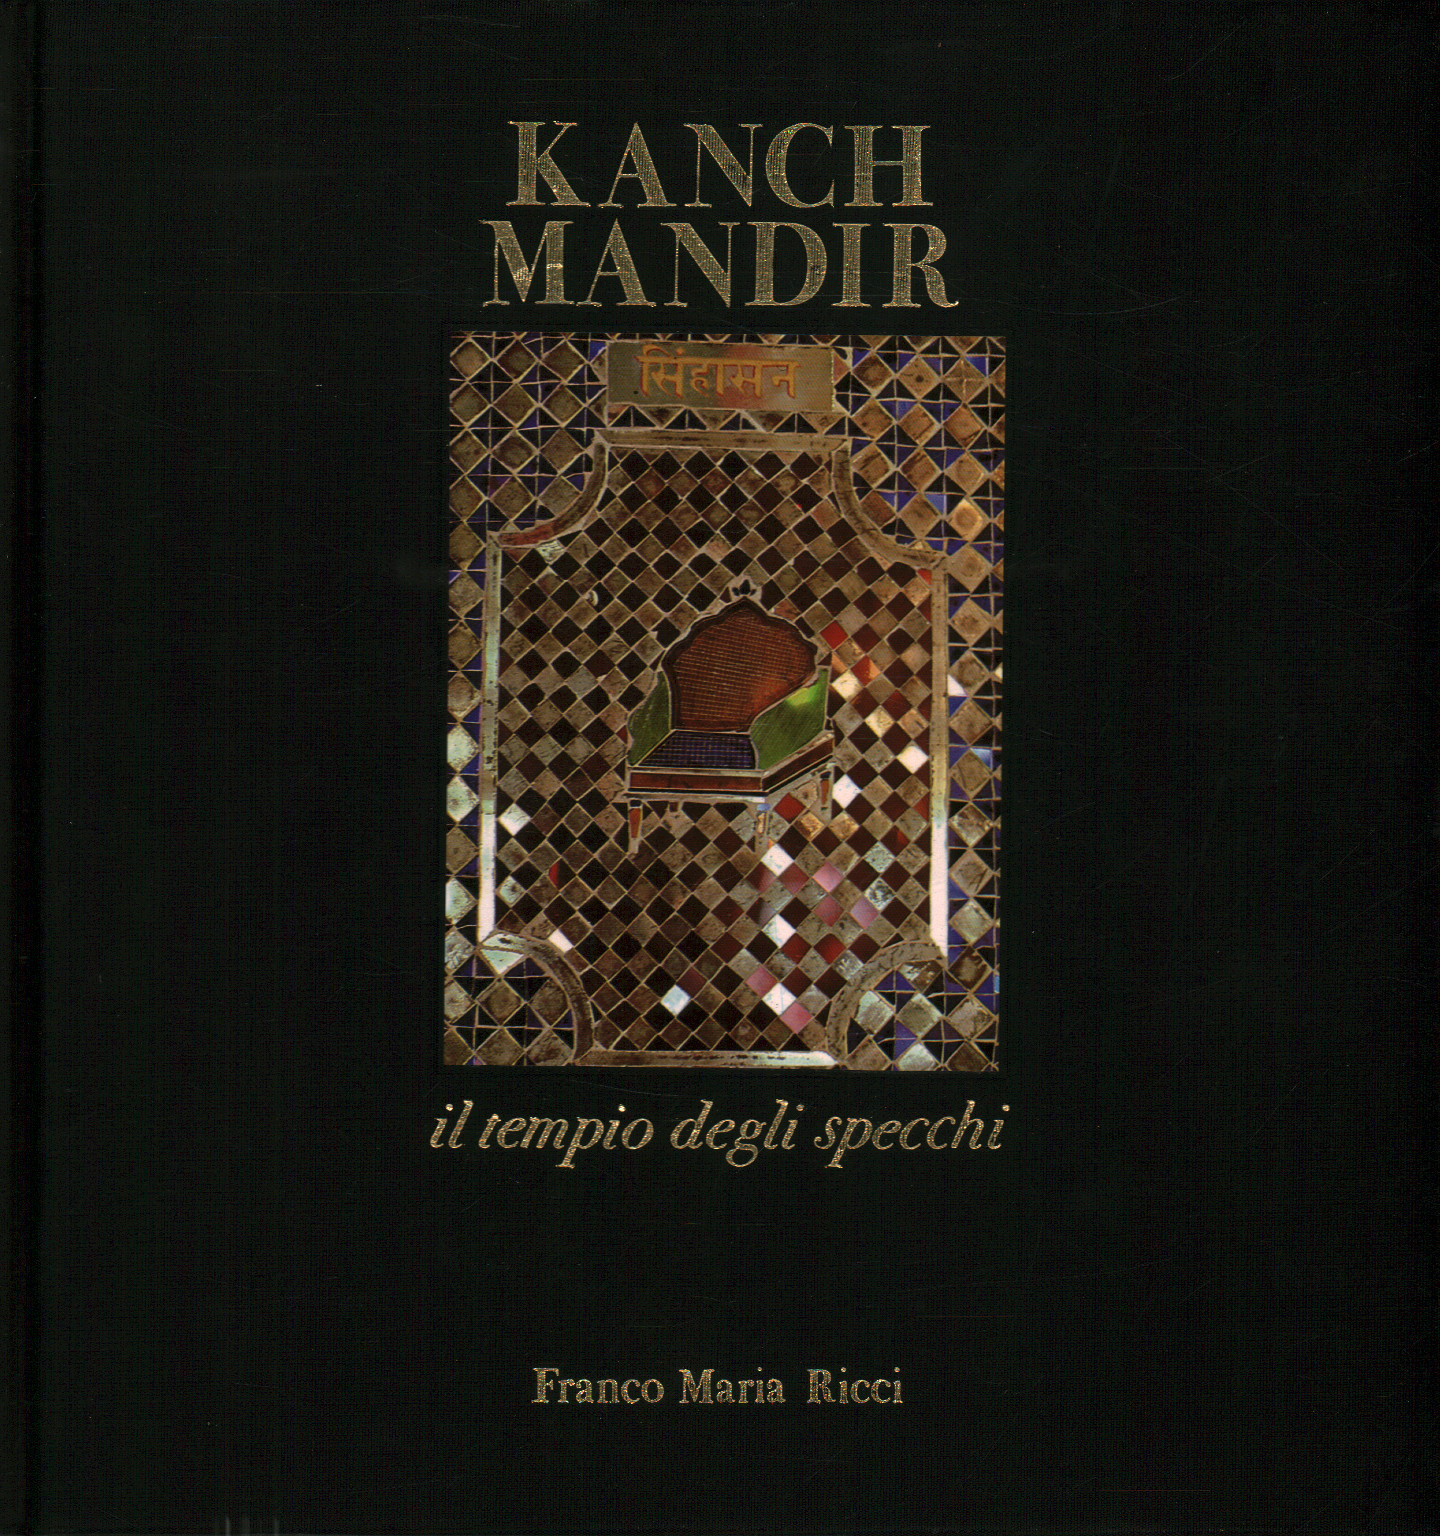 Kanch Mandir el templo de los espejos, s.a.